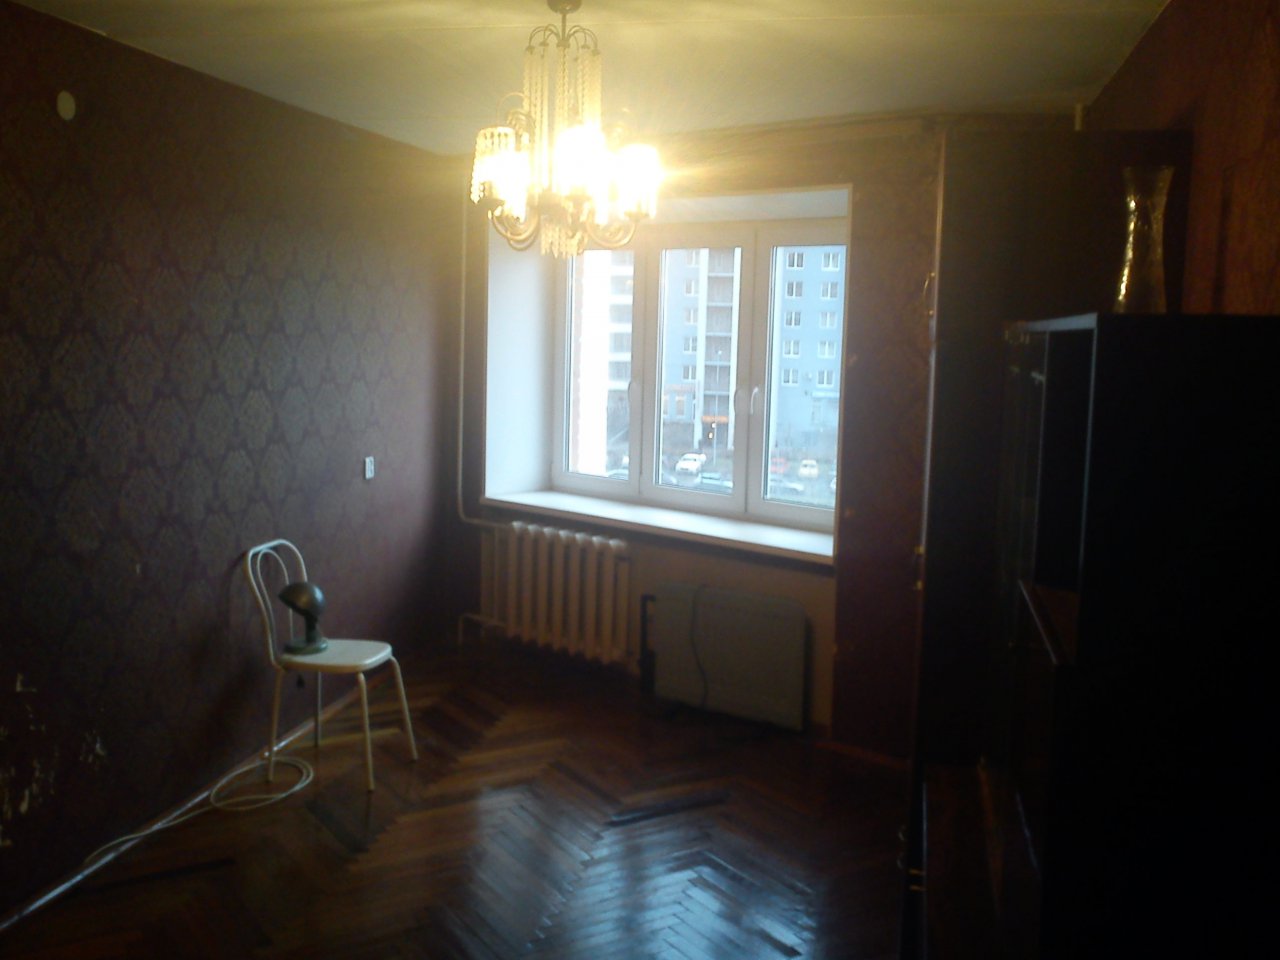 Сниму комнату у Приморской